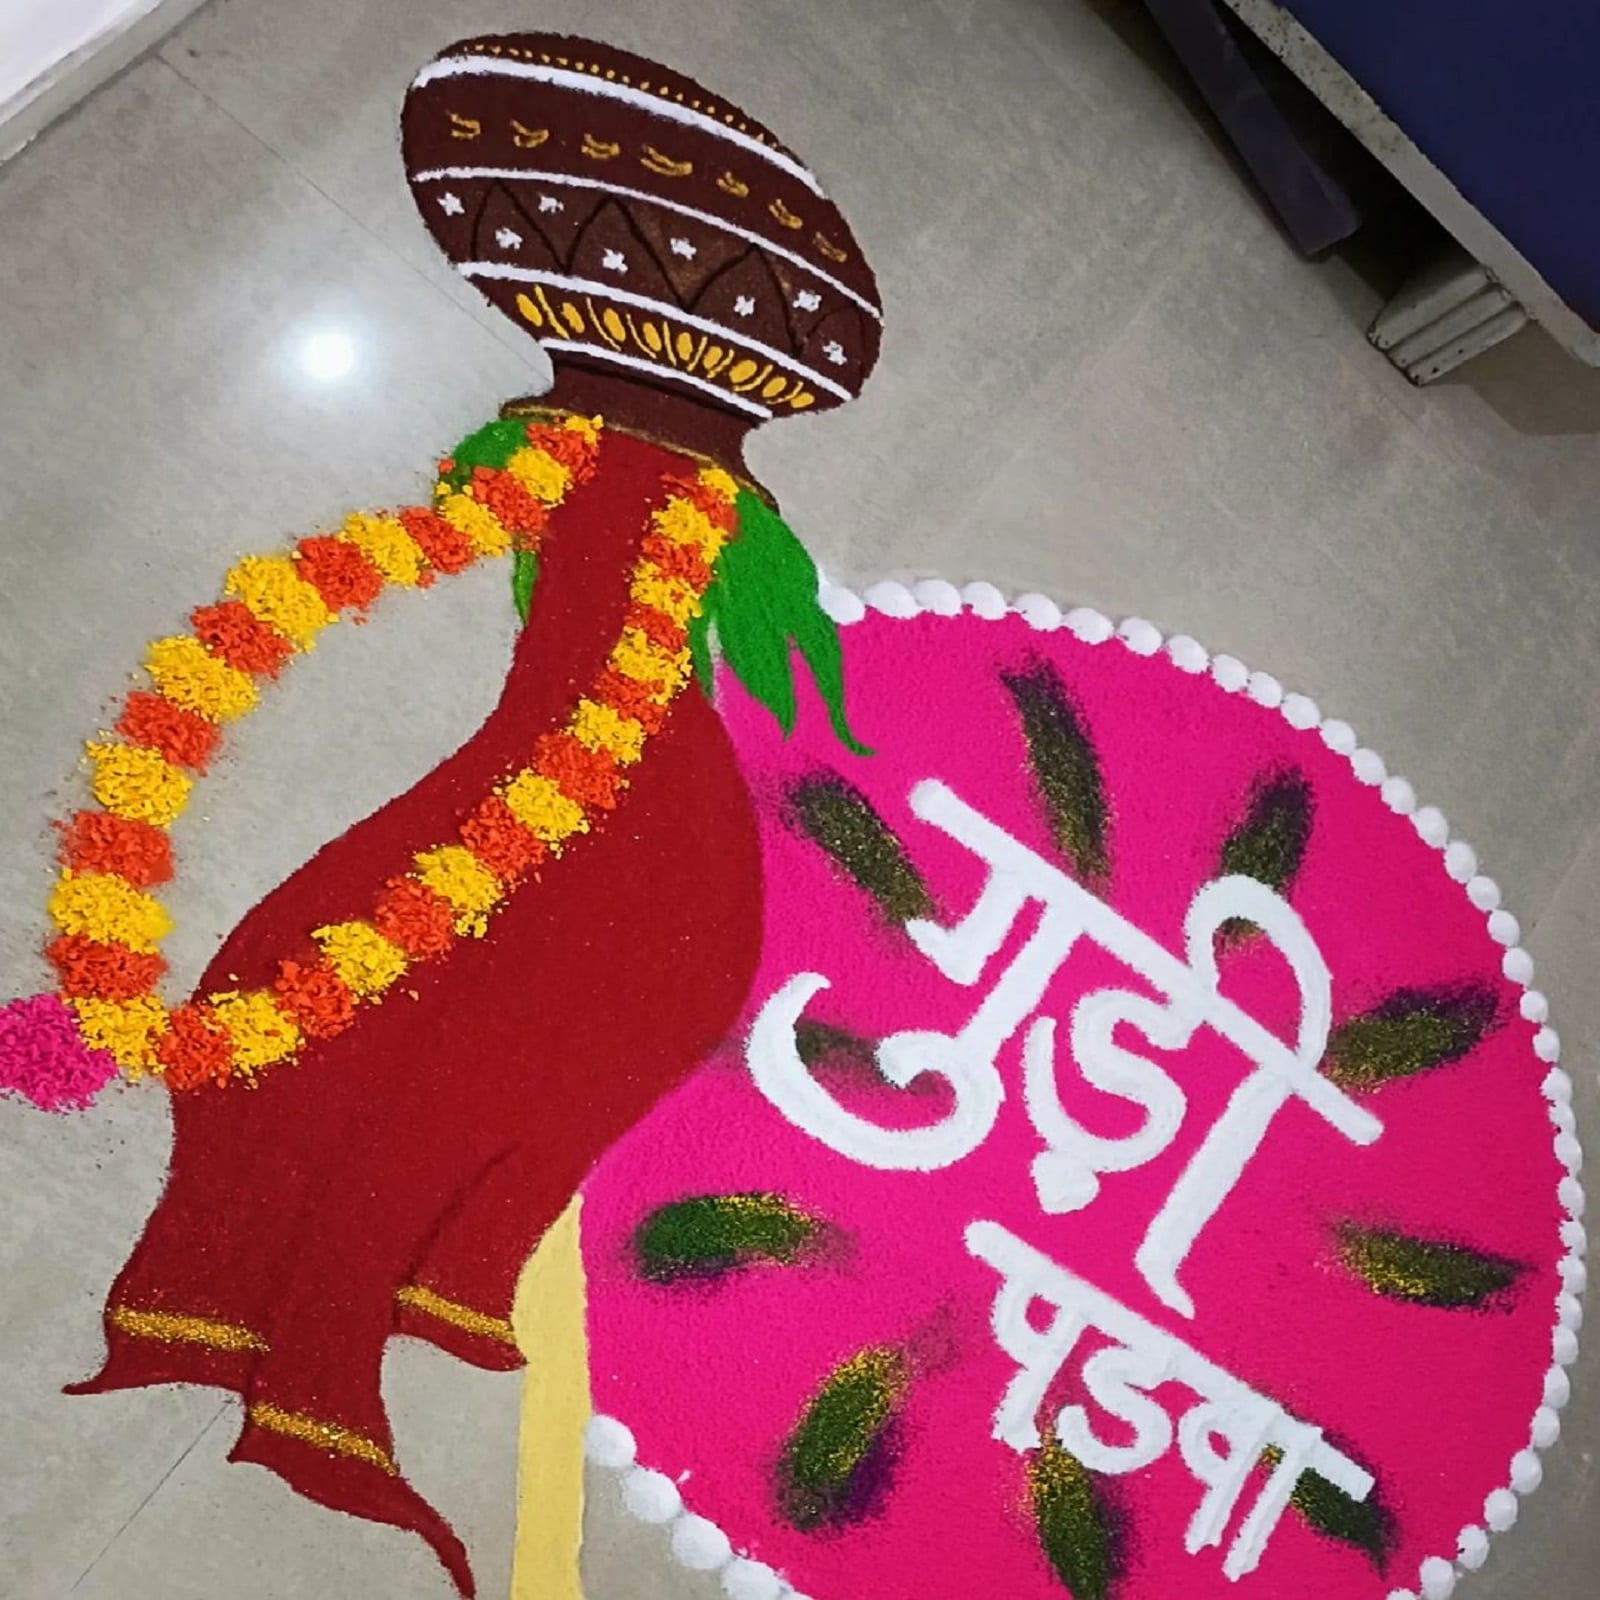  हिंदू पंचांग के अनुसार चैत्र माह के शुक्ल पक्ष की प्रतिपदा को गुड़ी पड़वा (Gudi Padwa) मनाया जाता है. इस दिन से ही चैत्र नवरात्रि (Chaitra Navratri) की शुरुआत होती है. इस खास मौके पर आप इस तरह रंगोली बना सकते हैं. (Image- Instagram/sachin_khyade)